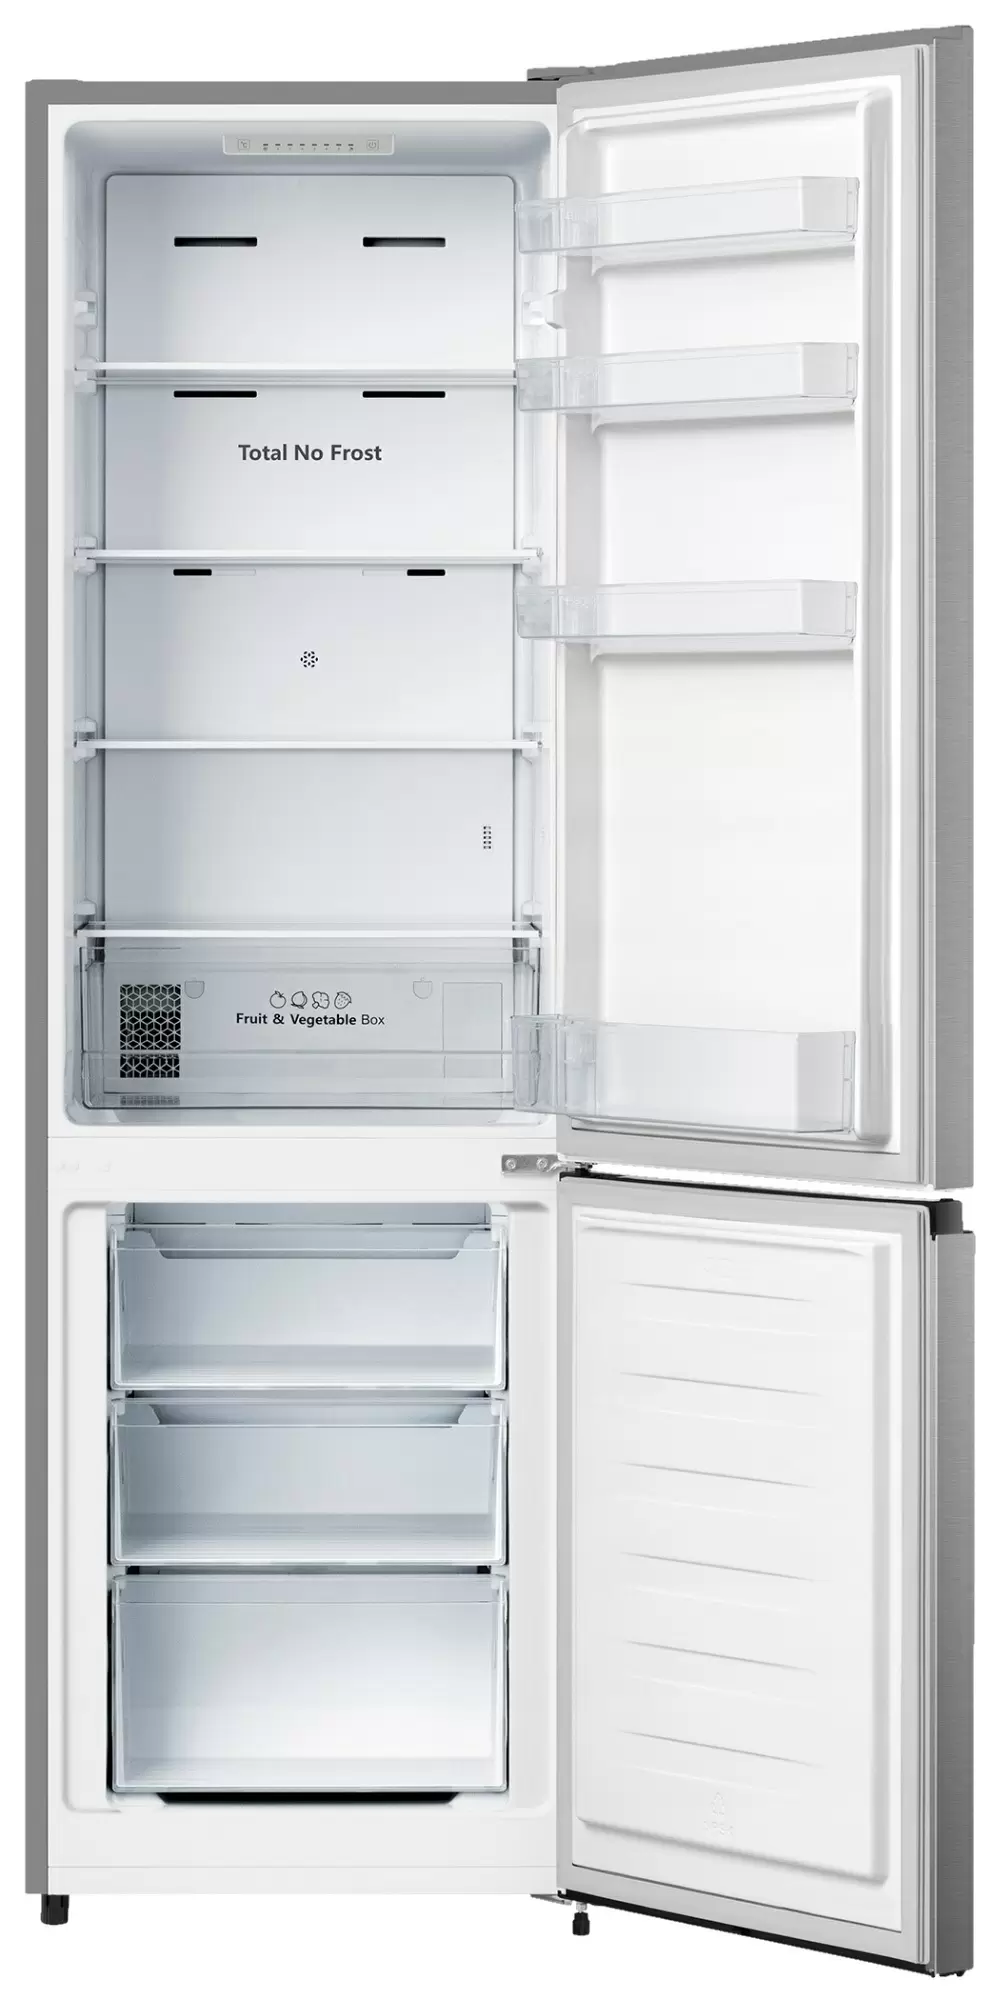 Холодильник Hisense RB329N4ACE, нержавеющая сталь